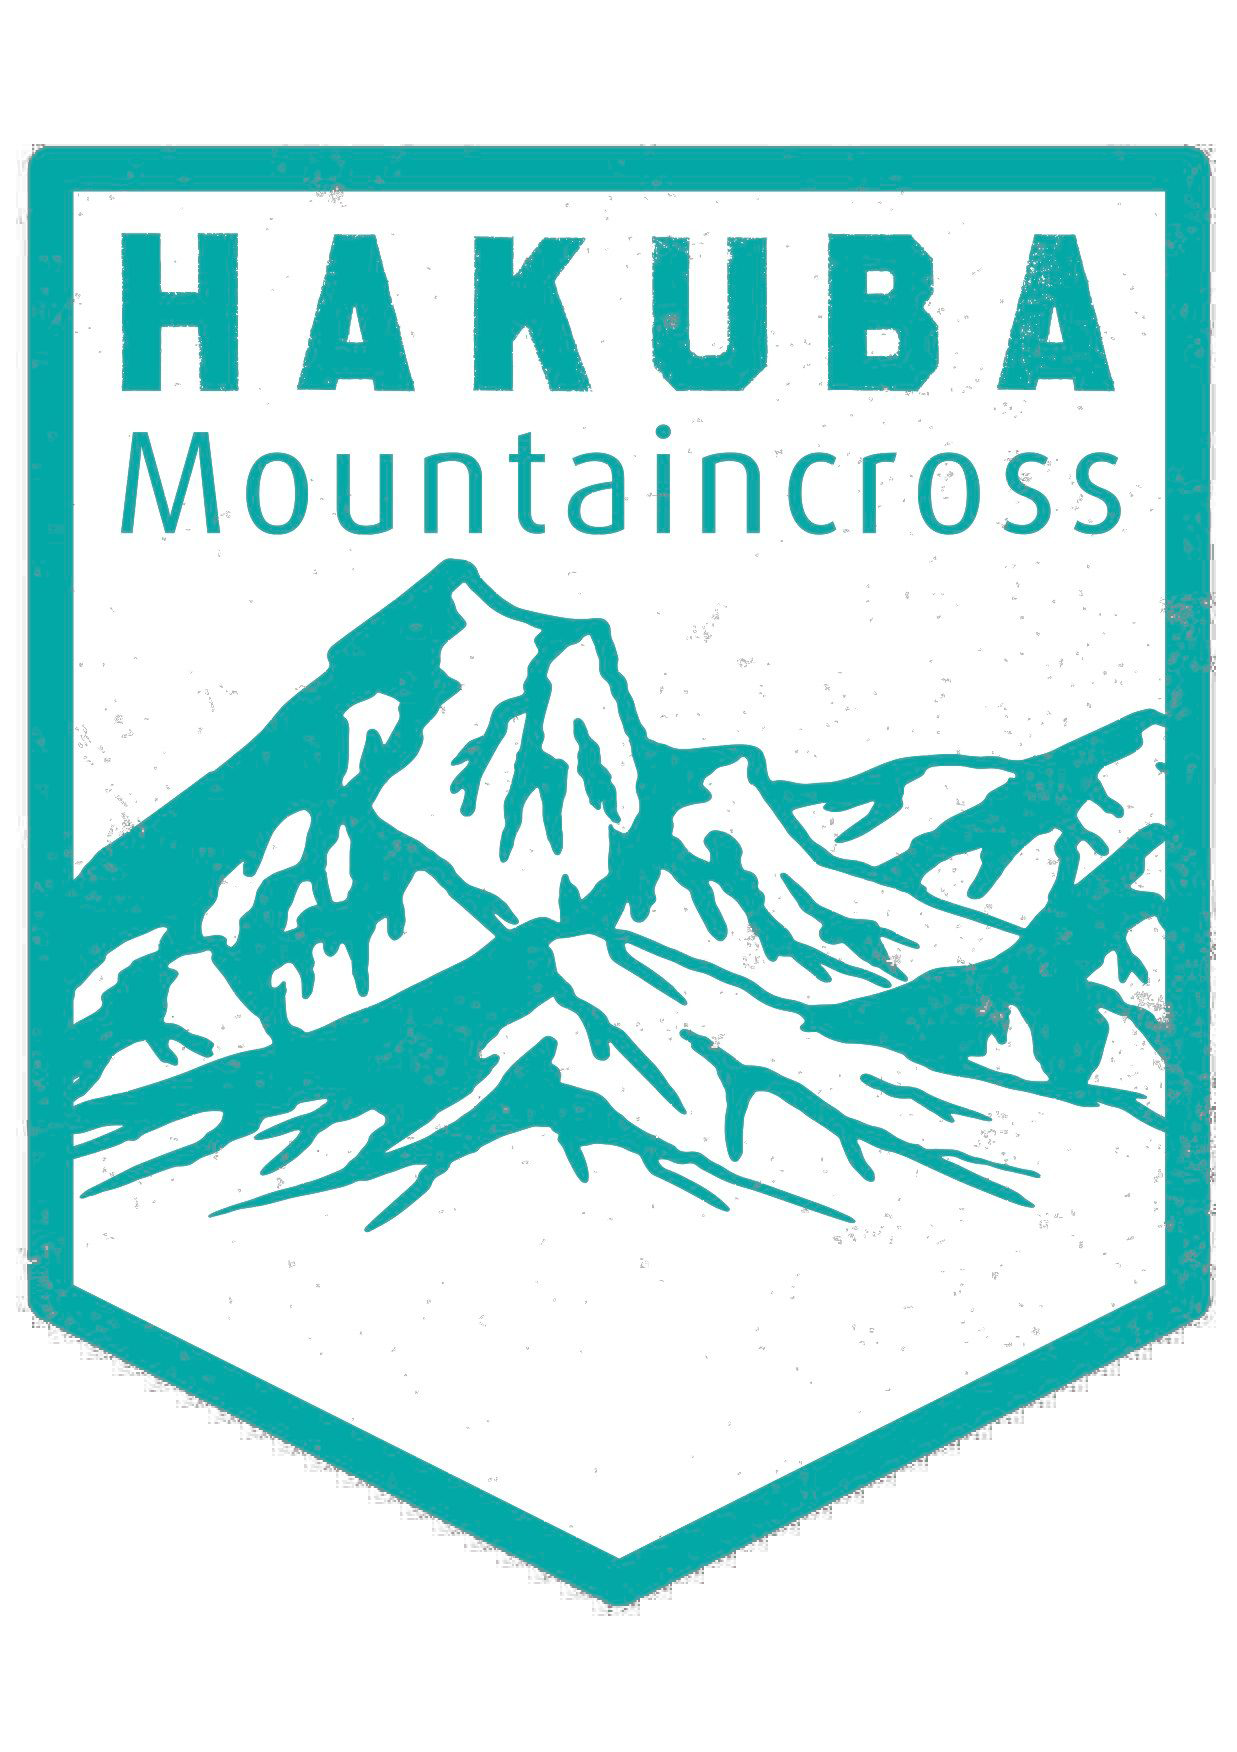 Hakuba Mountaincross logo